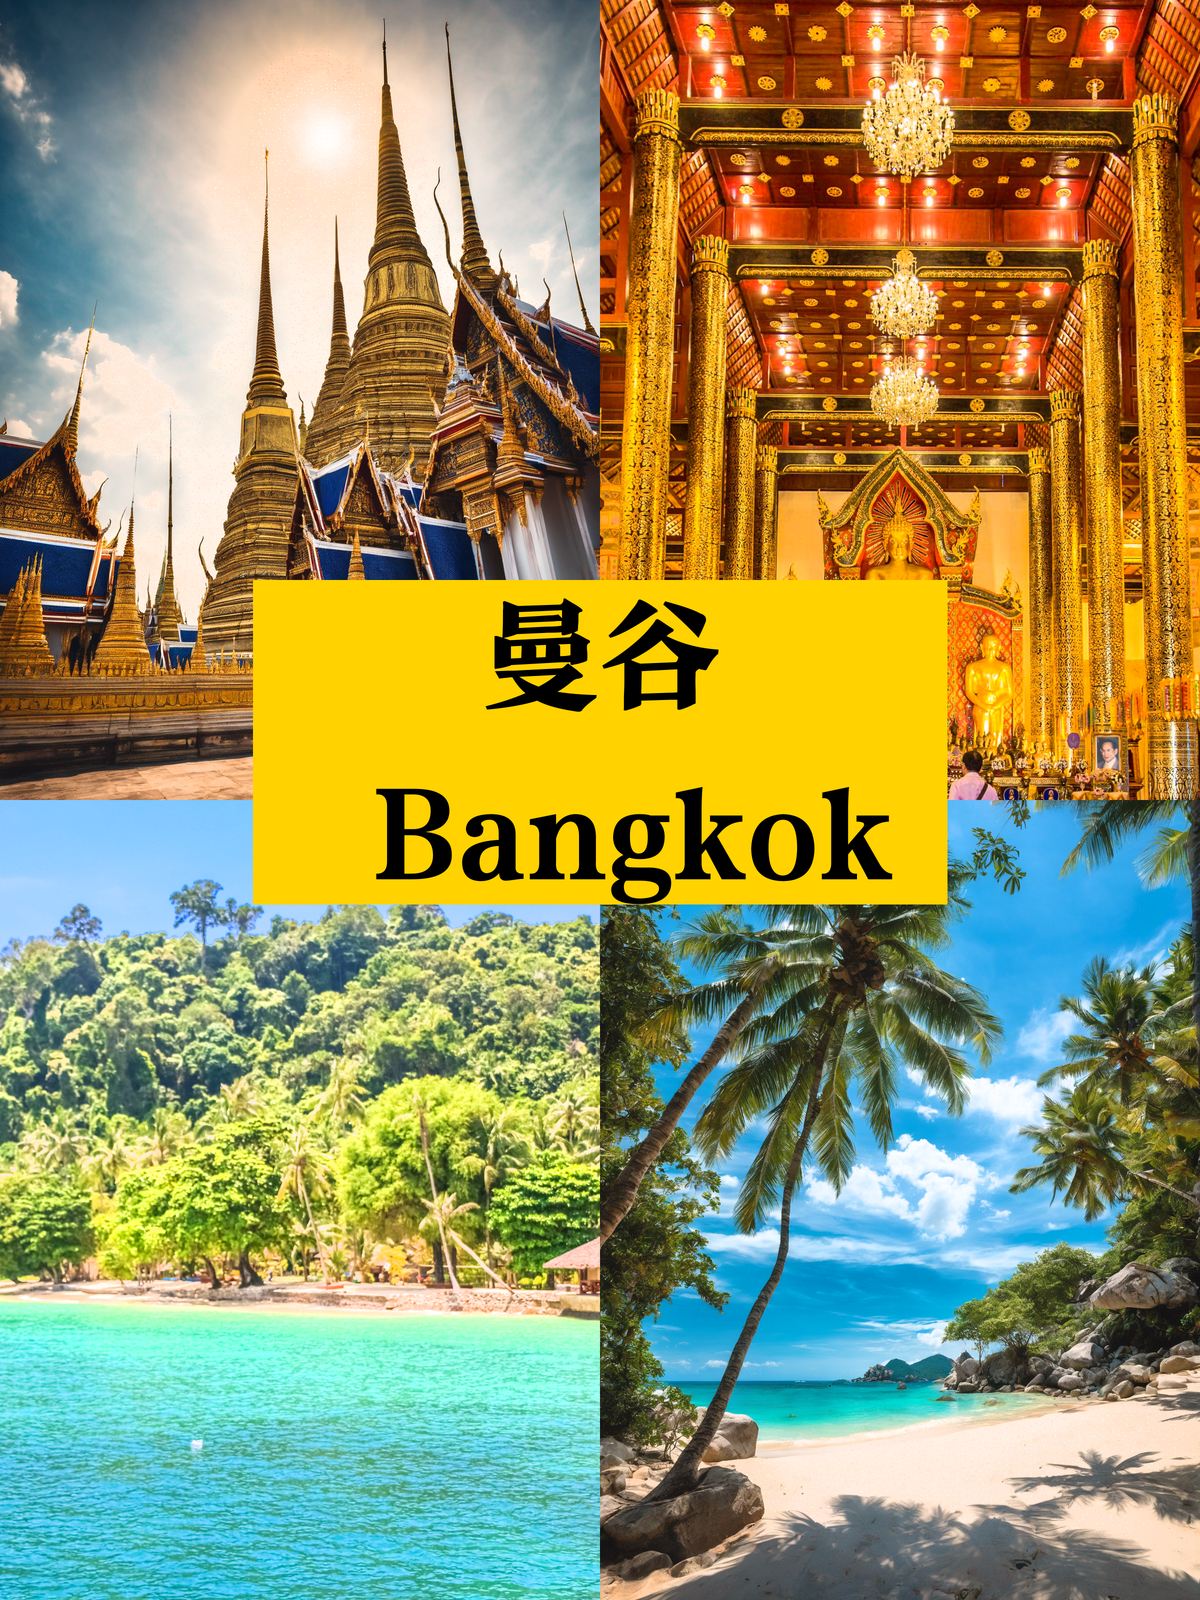 人均2k🎉6日泰国曼谷旅行 免签不贵❗